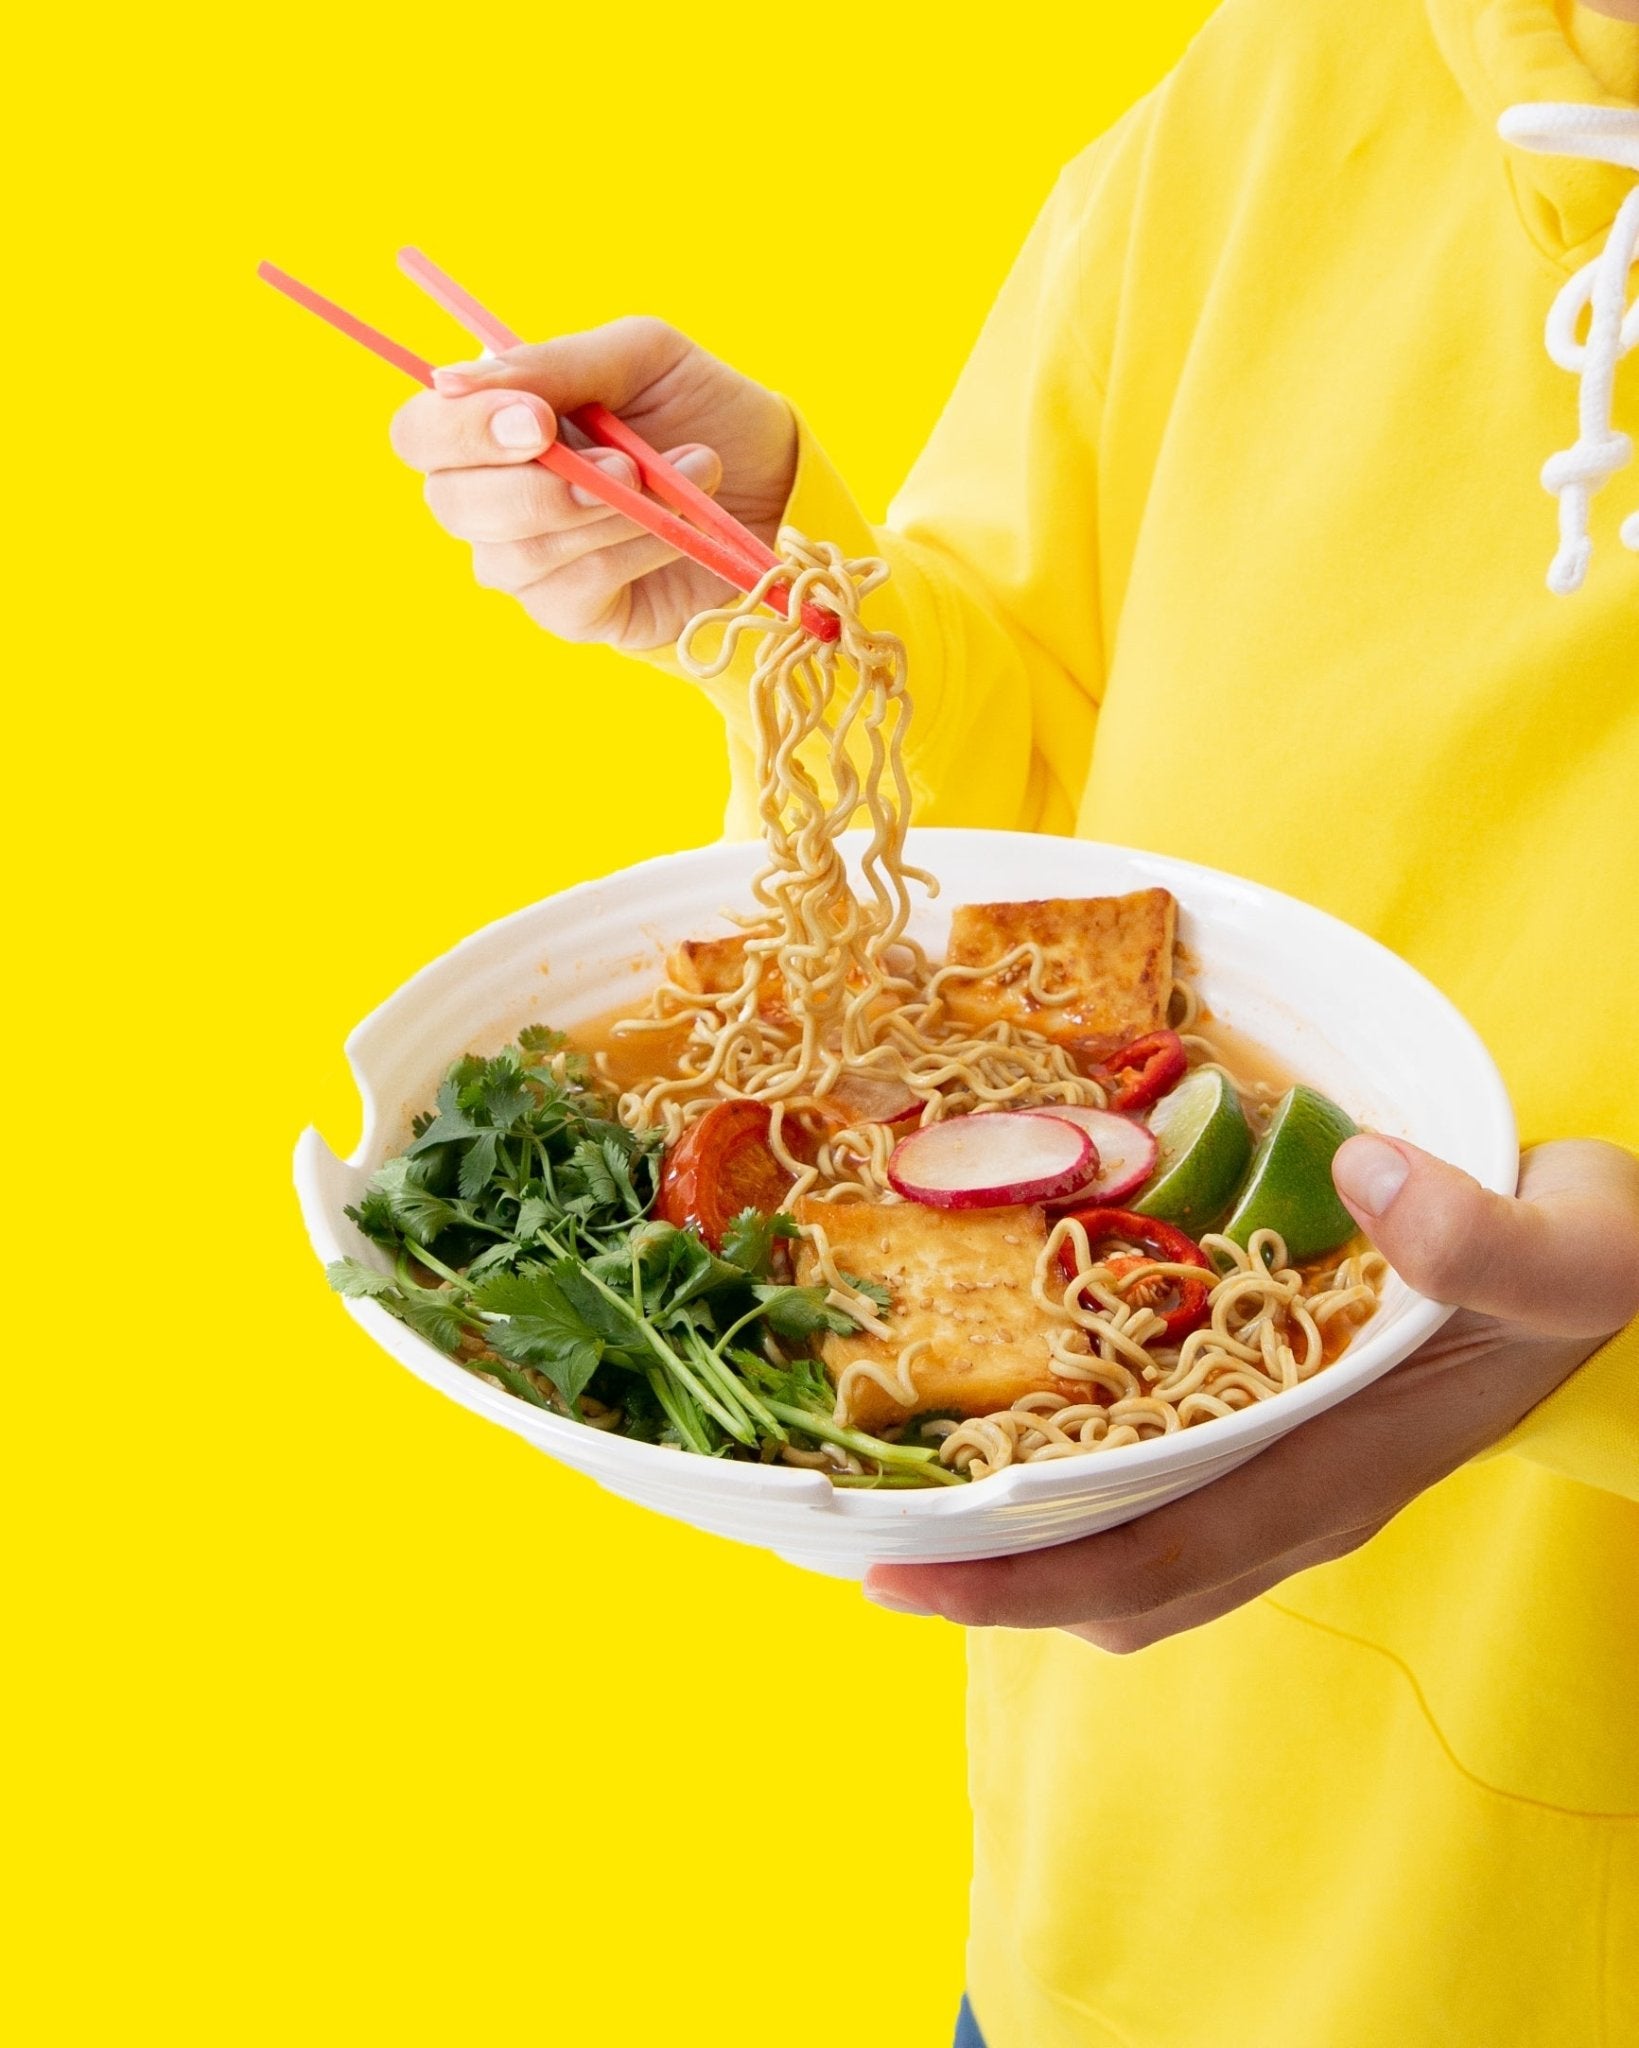 Tom Yum “Shrimp” Ramen - immi - Consumerhaus